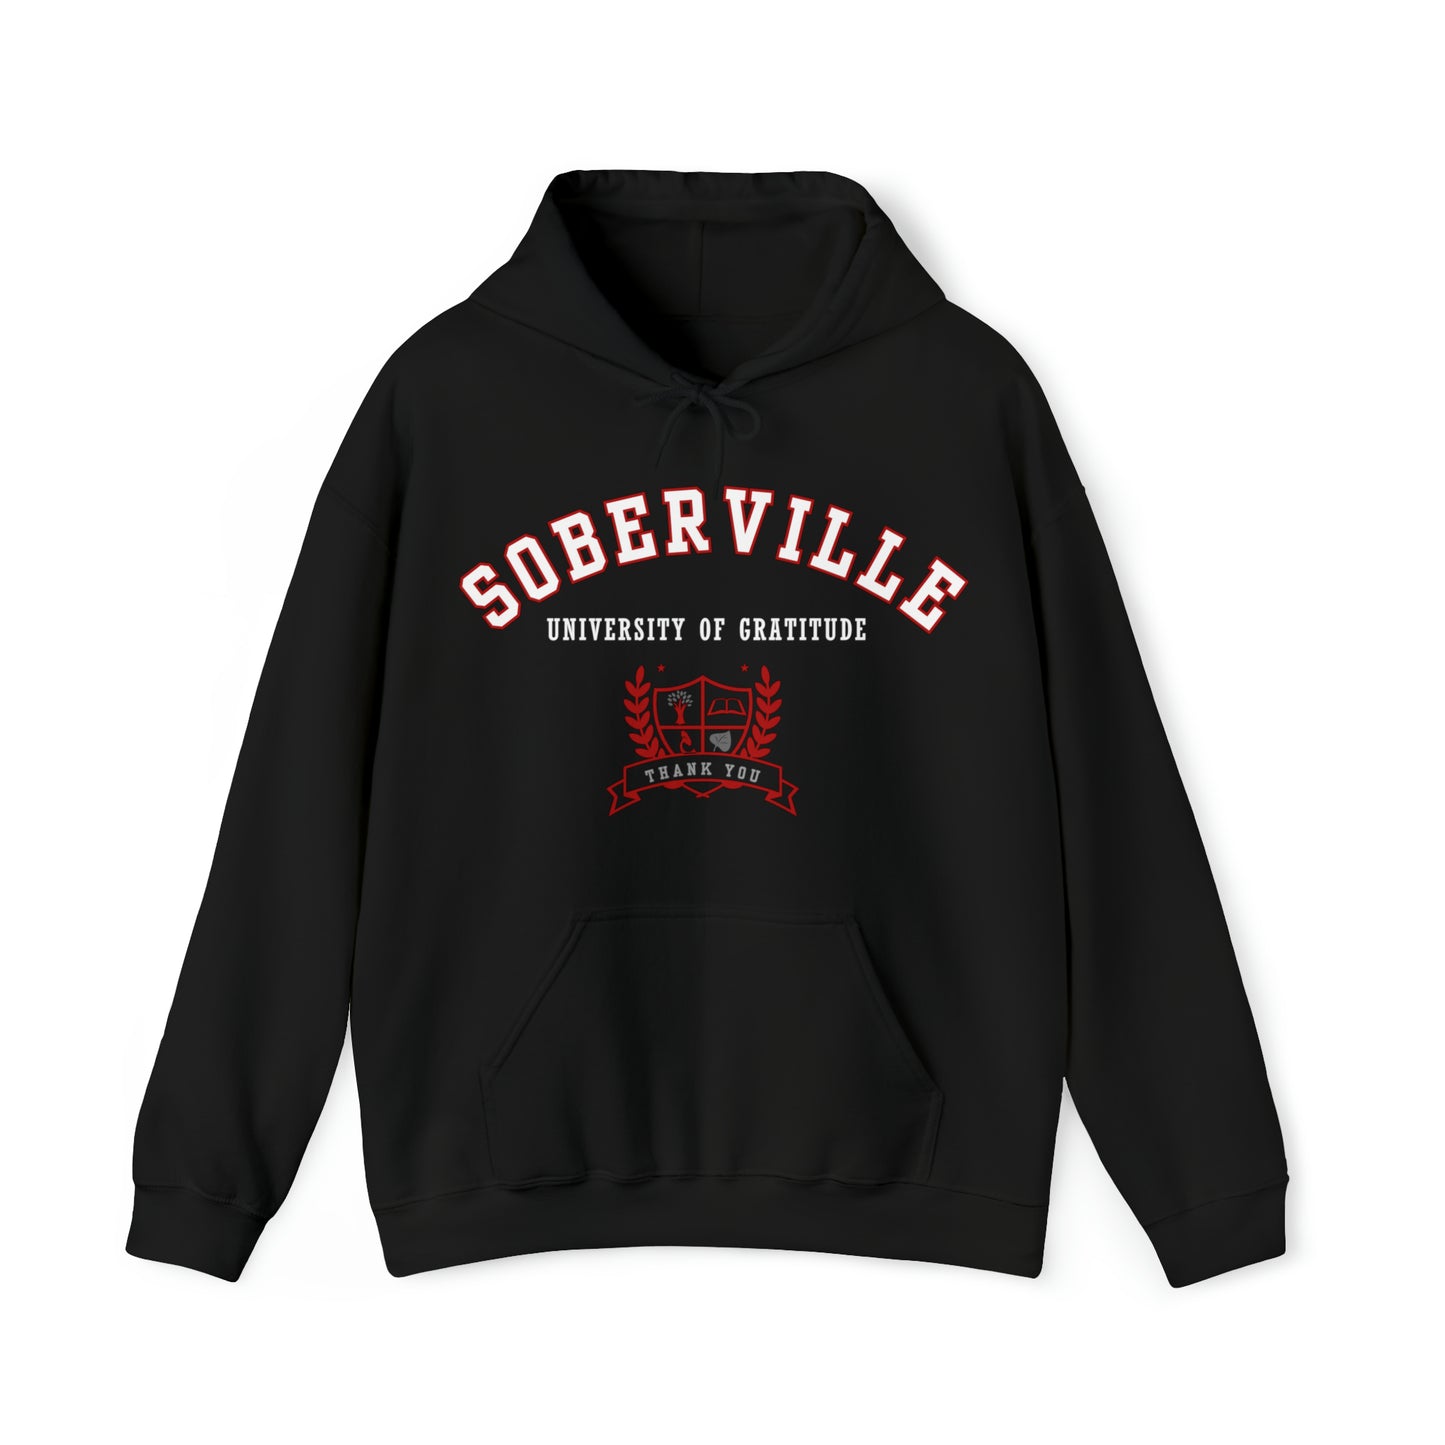 "Soberville - University of Gratitude" Unisex Hoodie